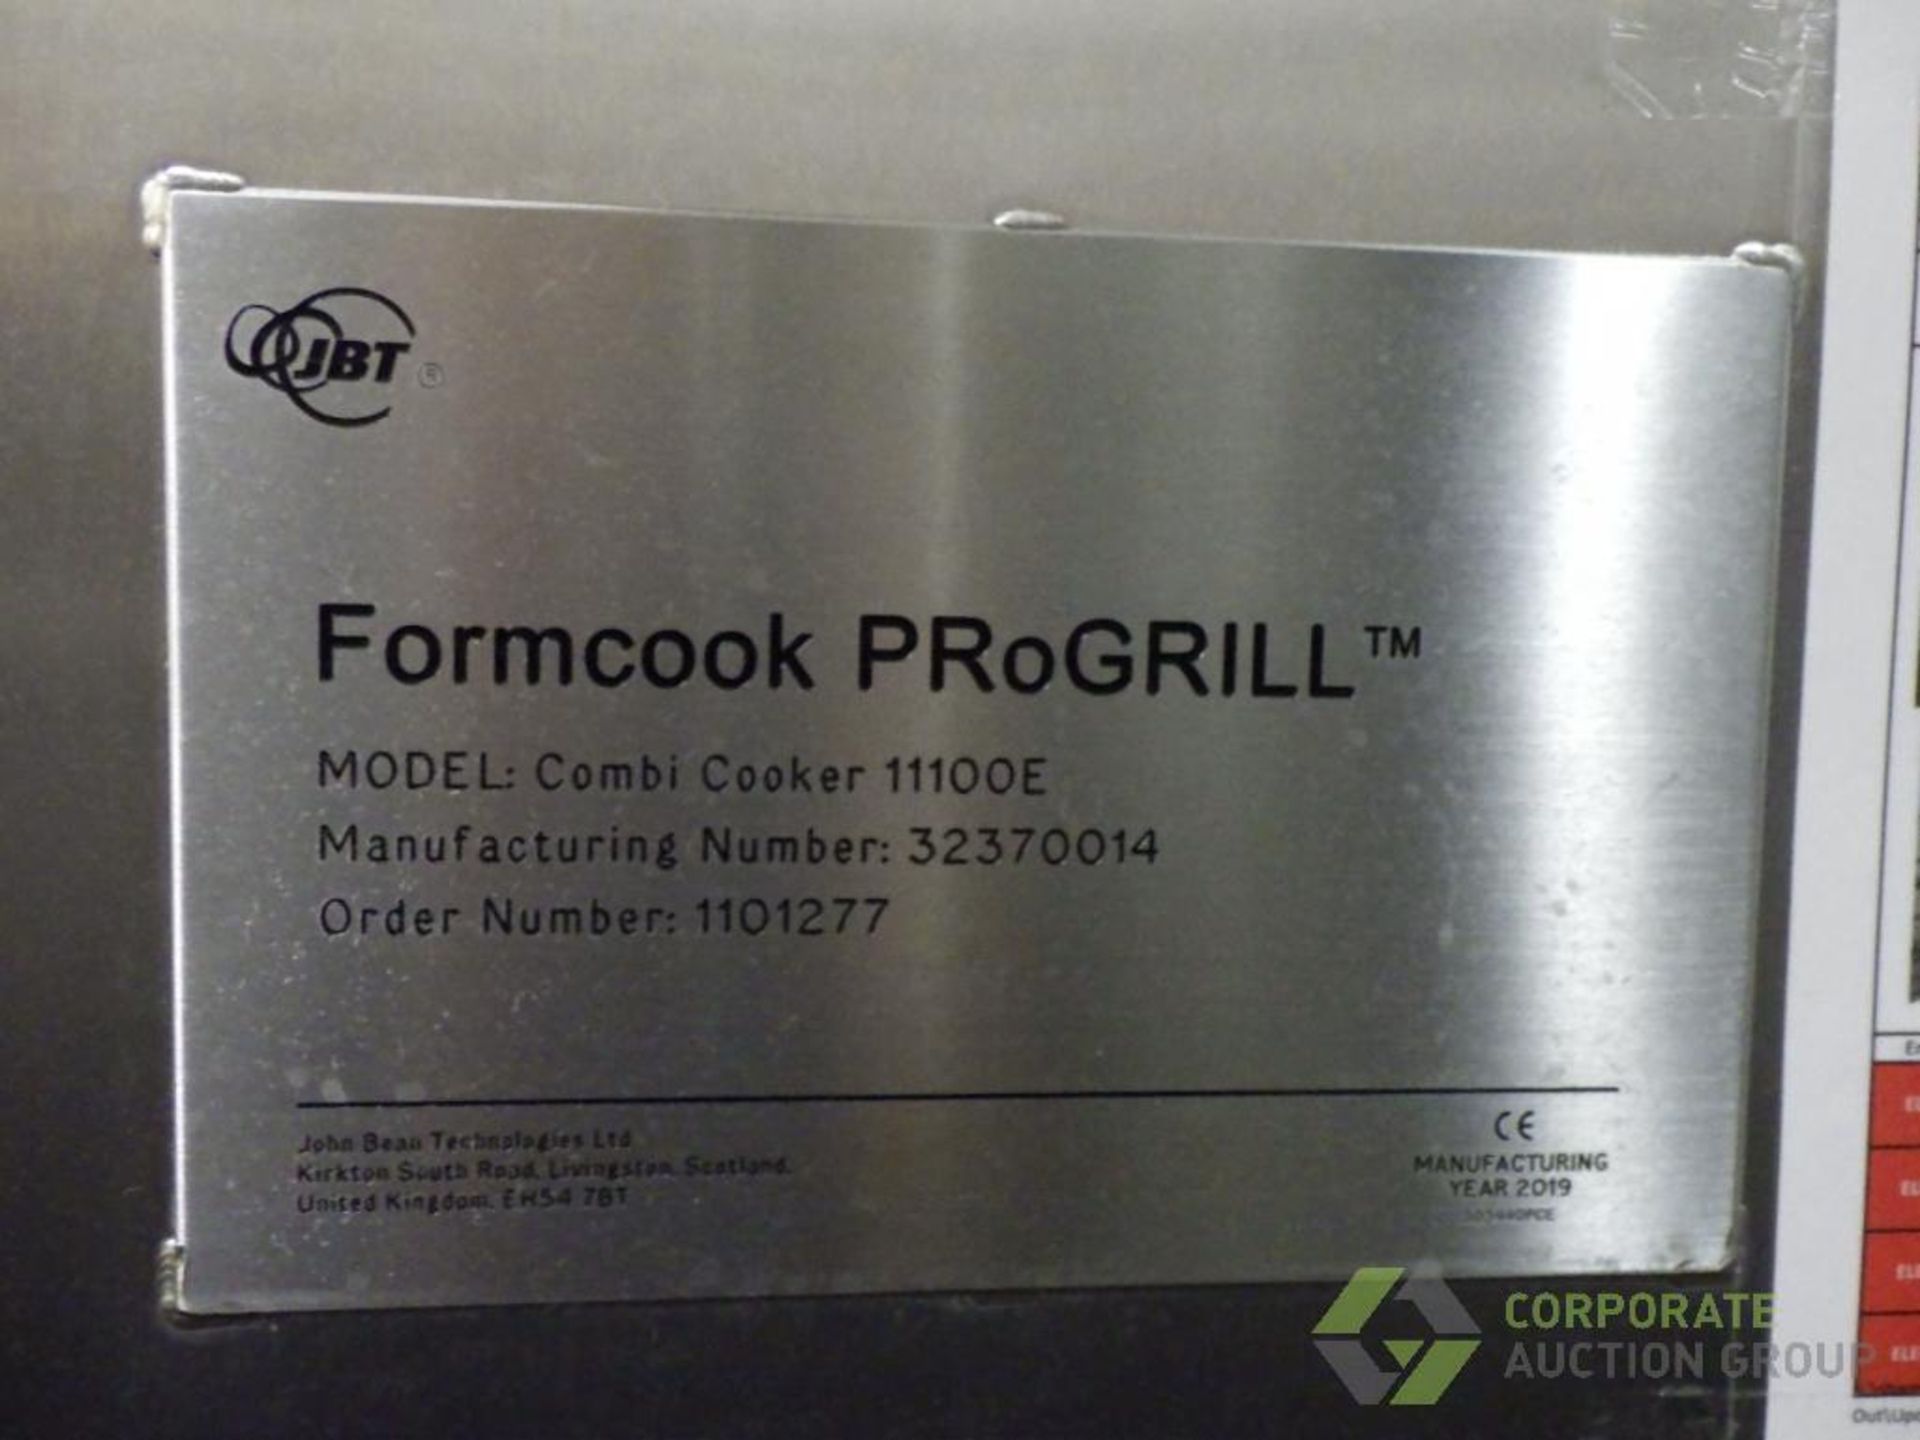 2019 JBT formcook progrill - Image 64 of 78